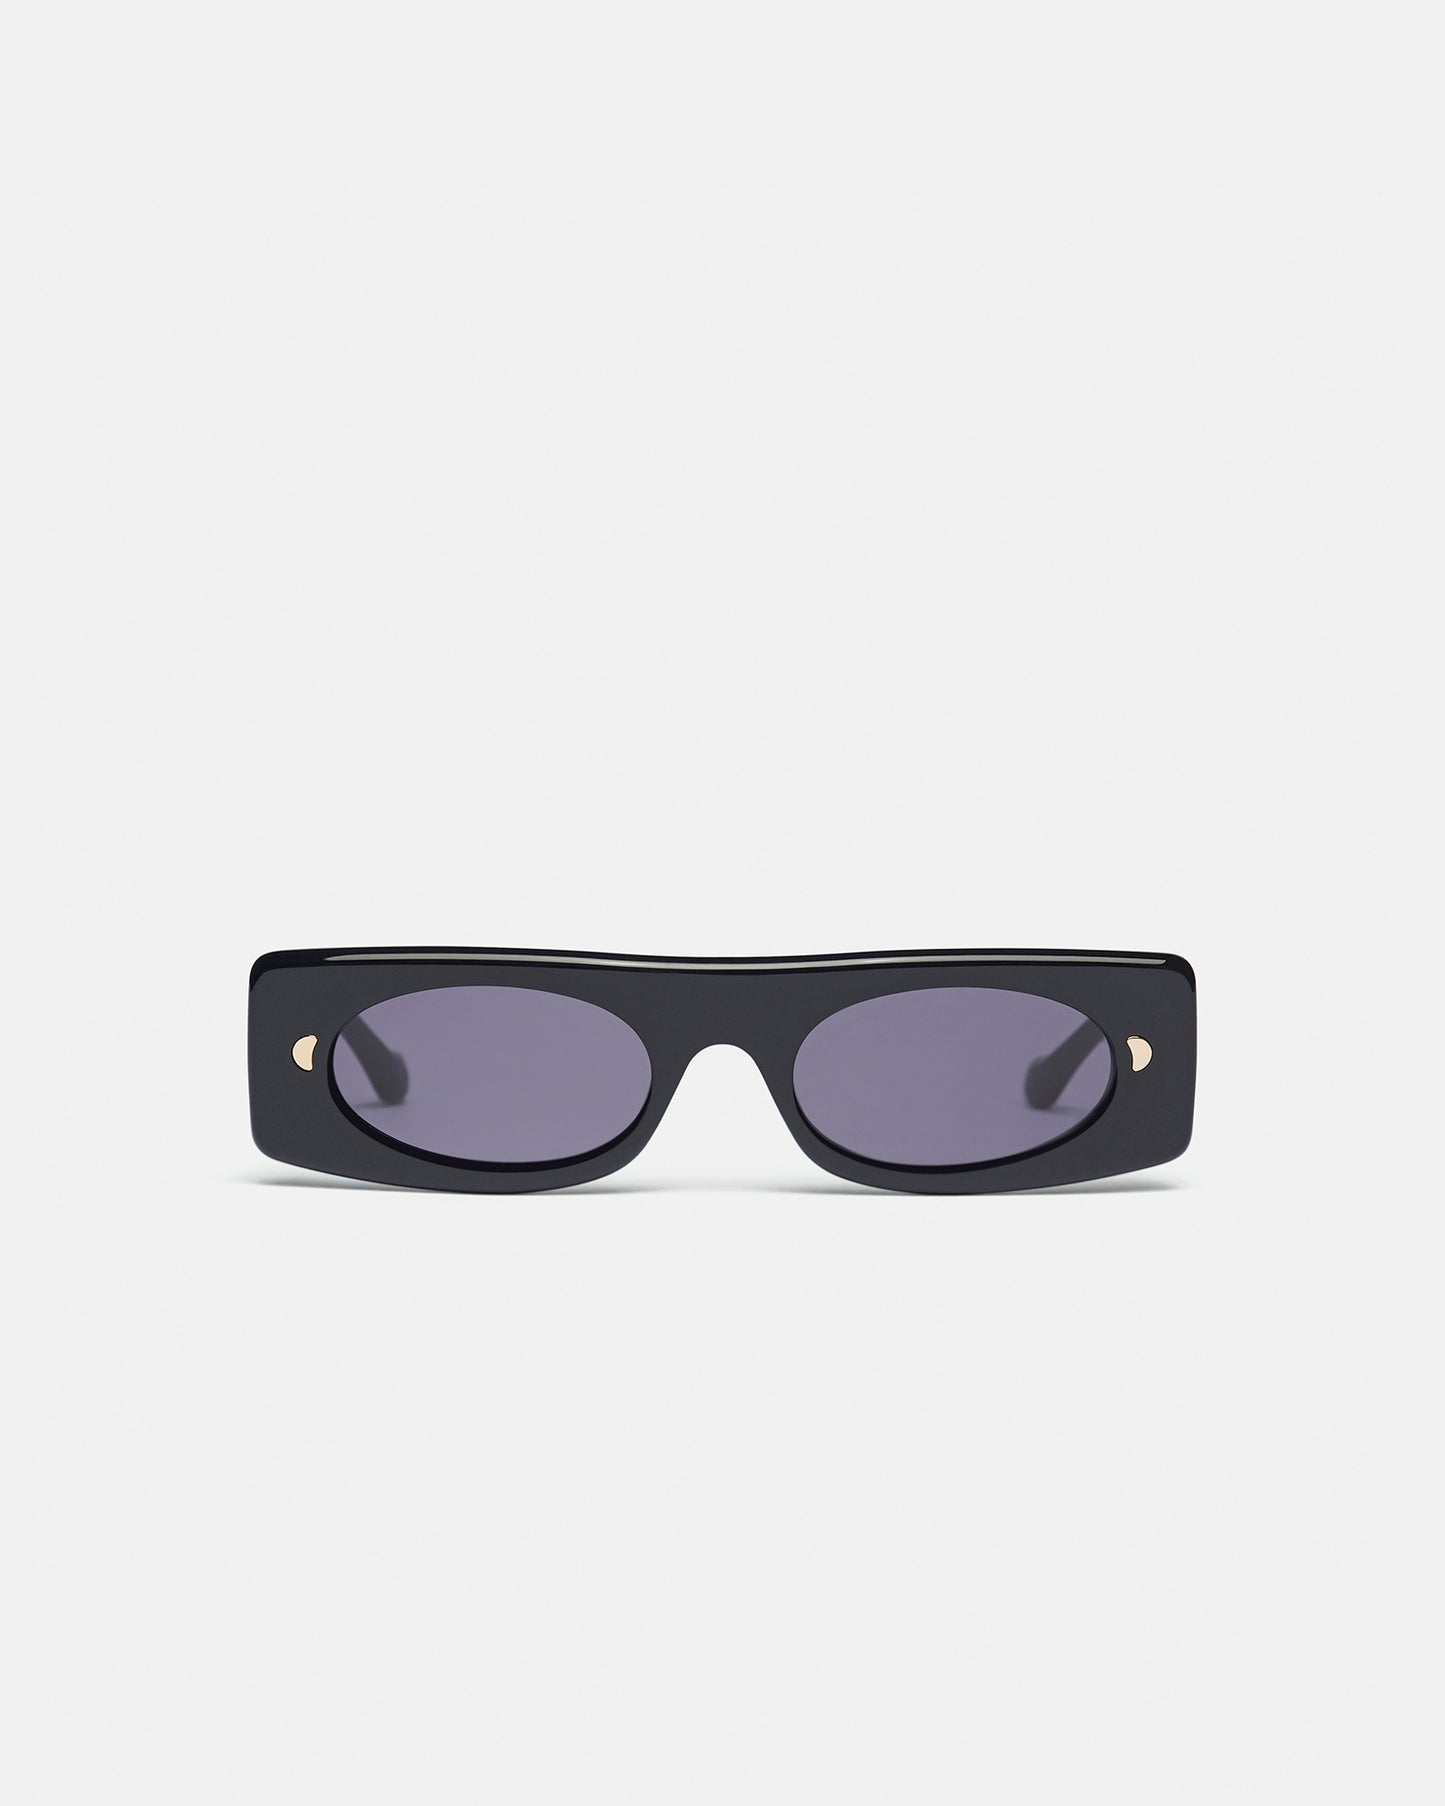 Ruthie - Bio-Plastic Visor Sunglasses - Black